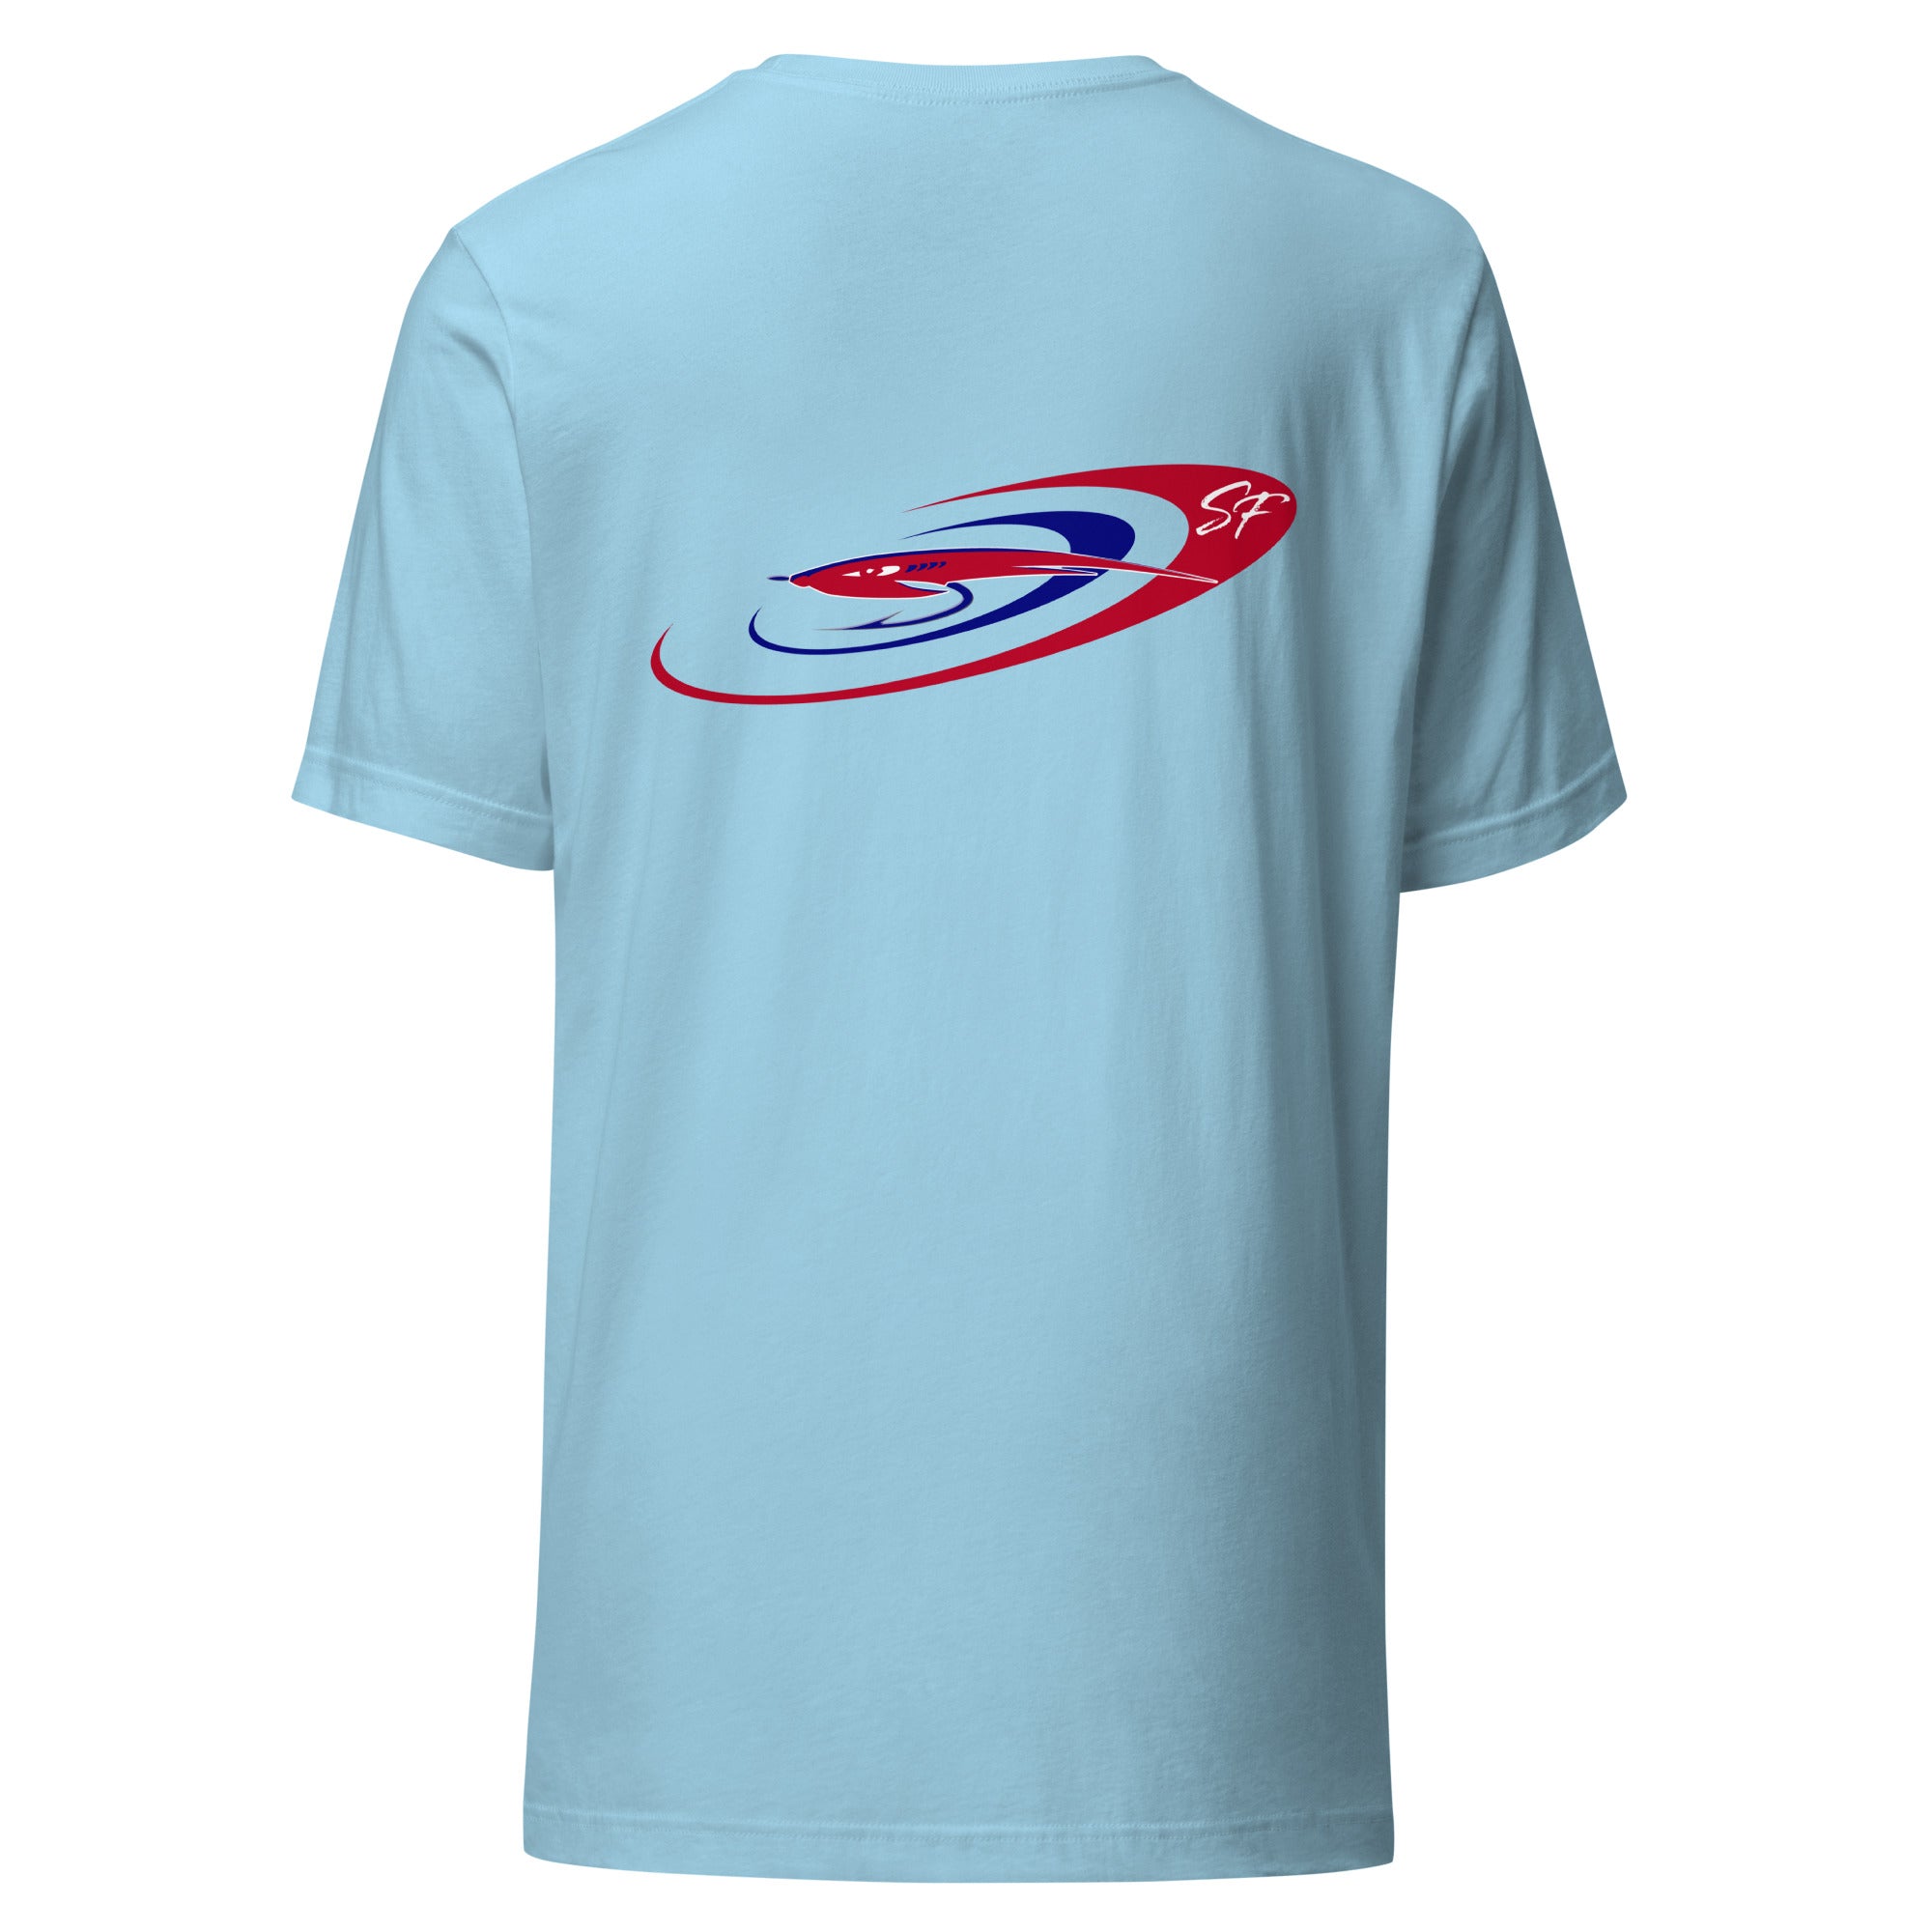 unisex-staple-t-shirt-ocean-blue-back-647a3c79bfd38.jpg